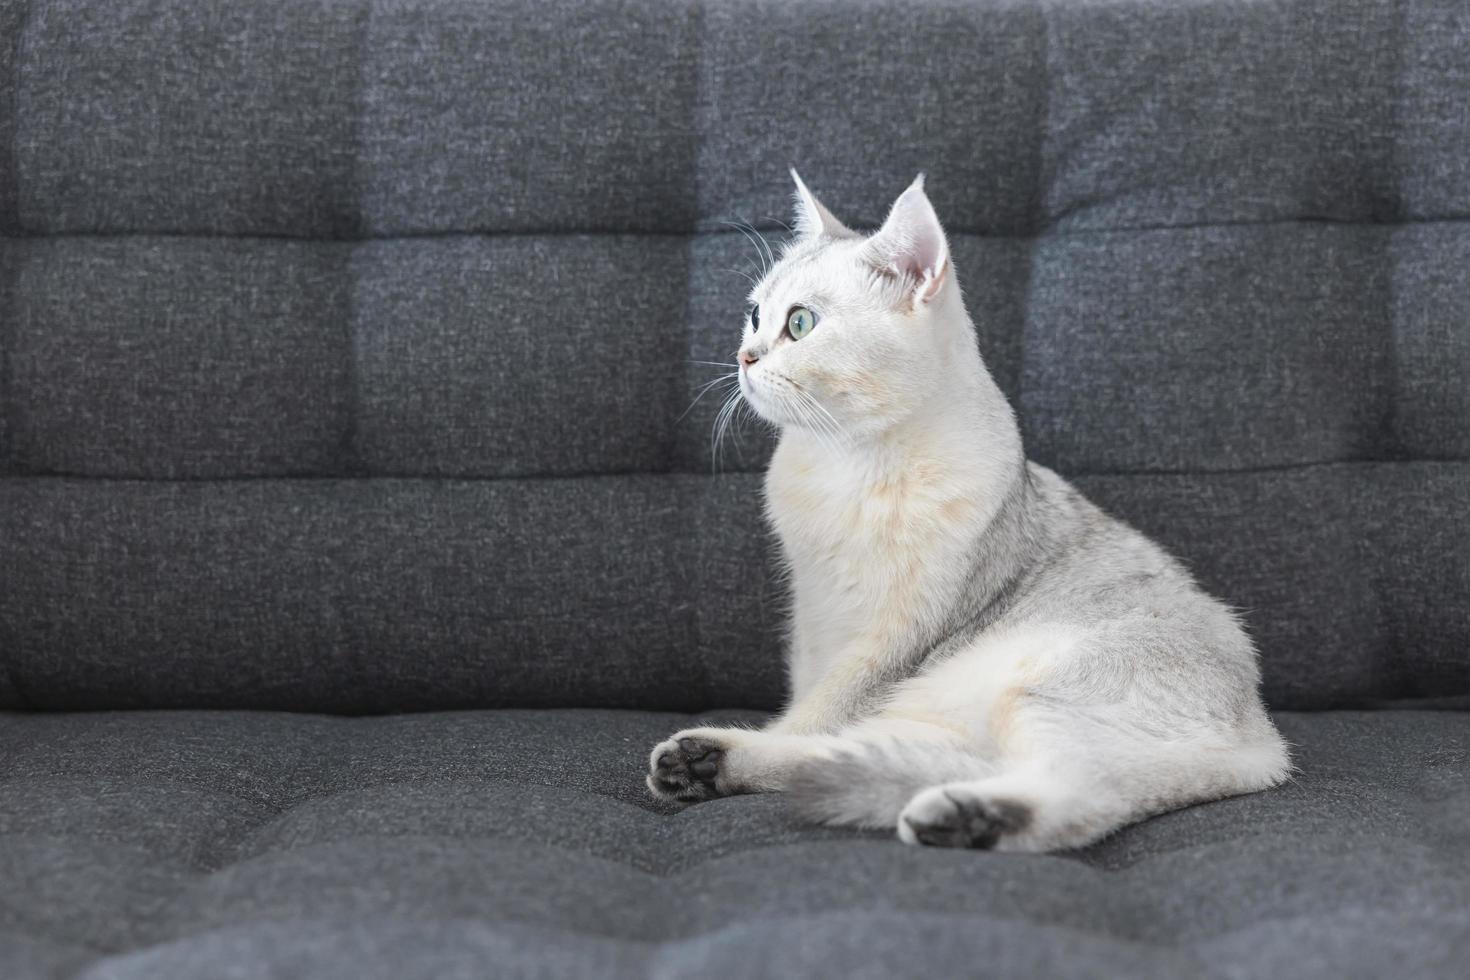 katze süß mit weißer kurzhaarrasse britischer reinrassiger. das kätzchenhaustier sitzt auf einem sofa und sieht gelb-grüne kameraaugen aus. Katzensäugetiere sind flauschig und verspielt. foto